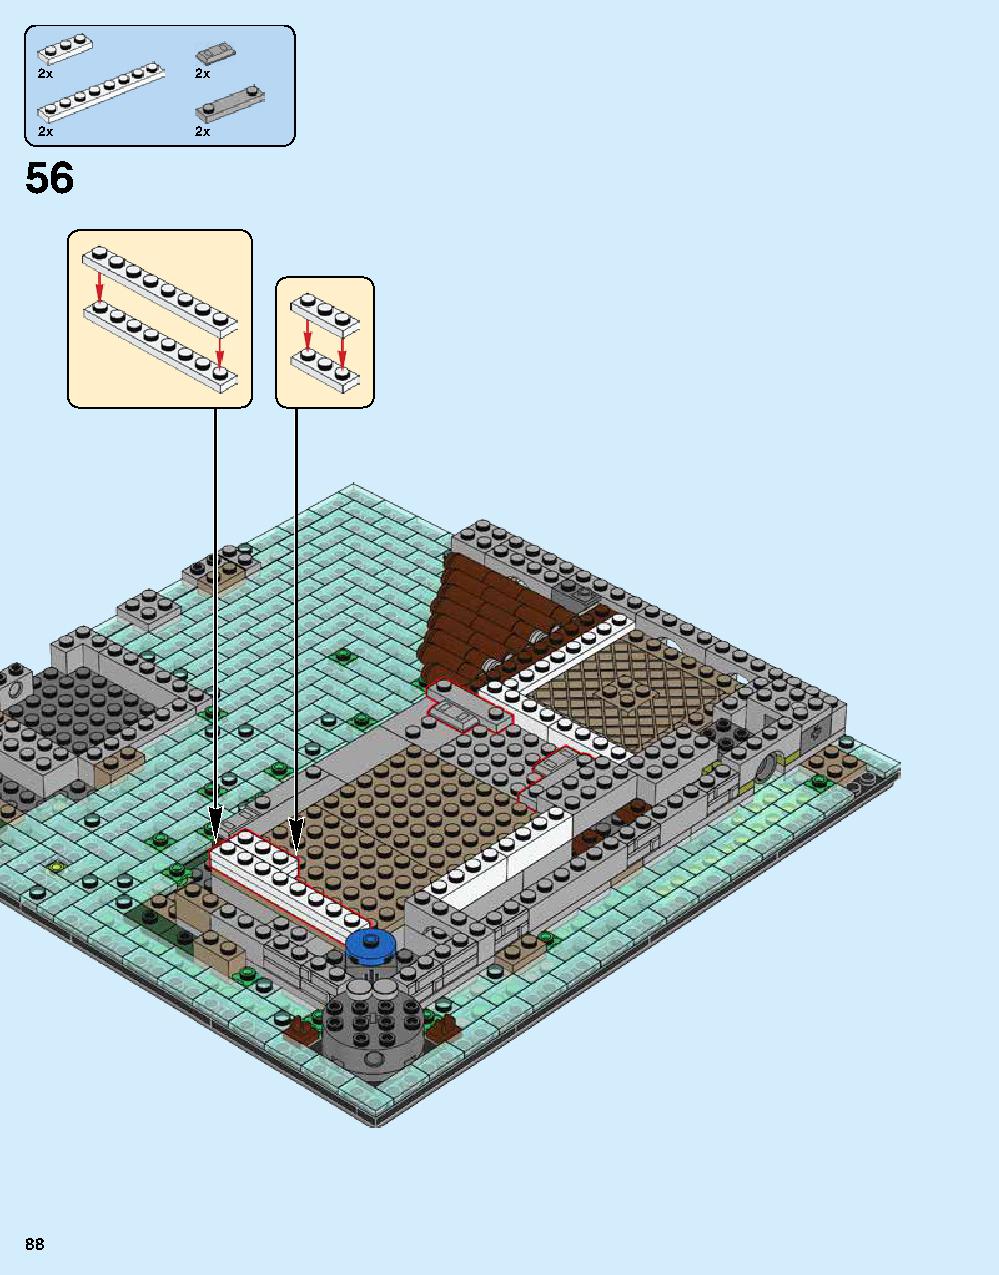 ニンジャゴー シティ 70620 レゴの商品情報 レゴの説明書・組立方法 88 page